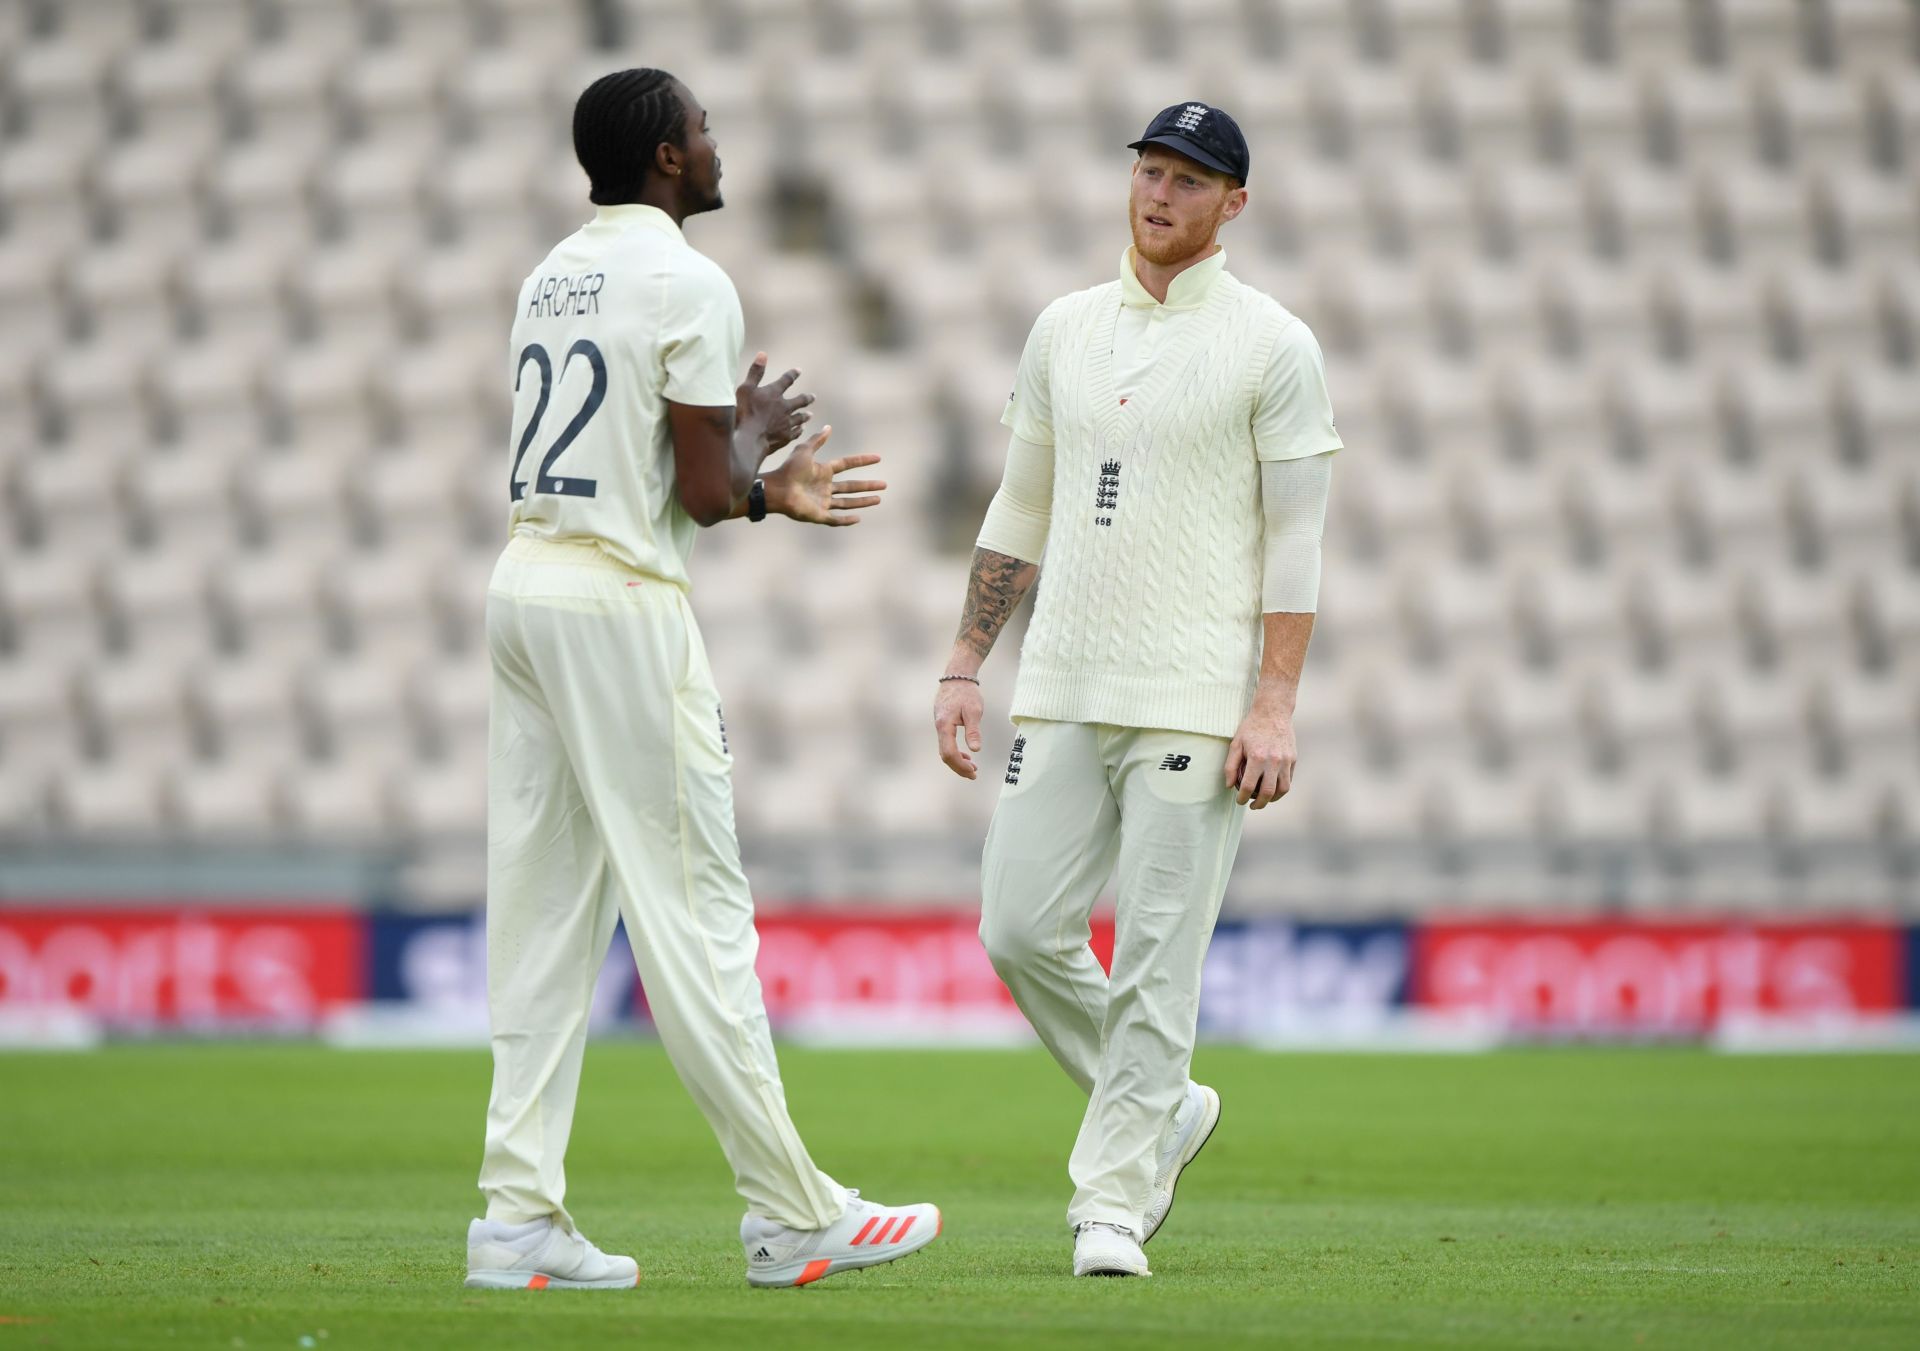 England v West Indies: Day 2 - First Test #RaiseTheBat Series